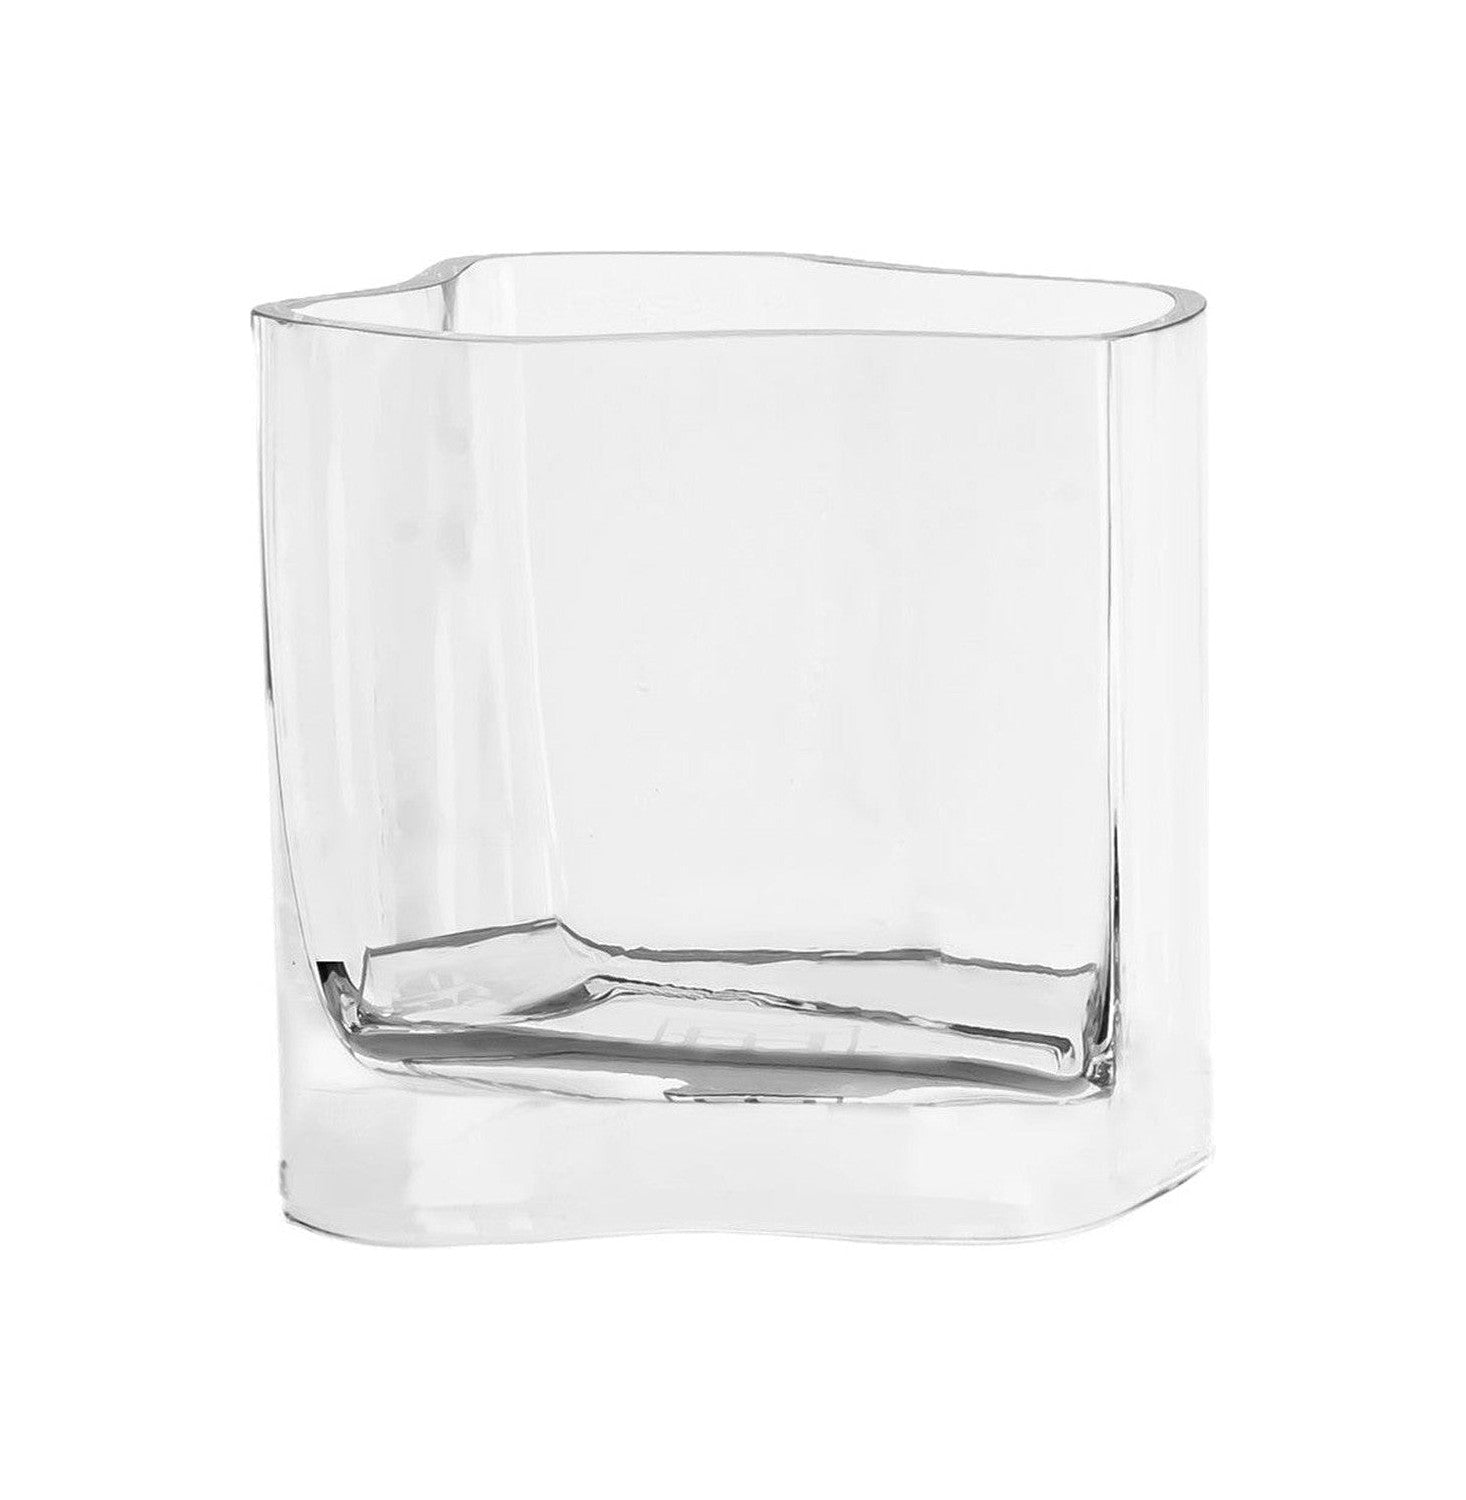 Modernes Glasdesign Vase inspiriert von Coral und Aalto, Cor13cl